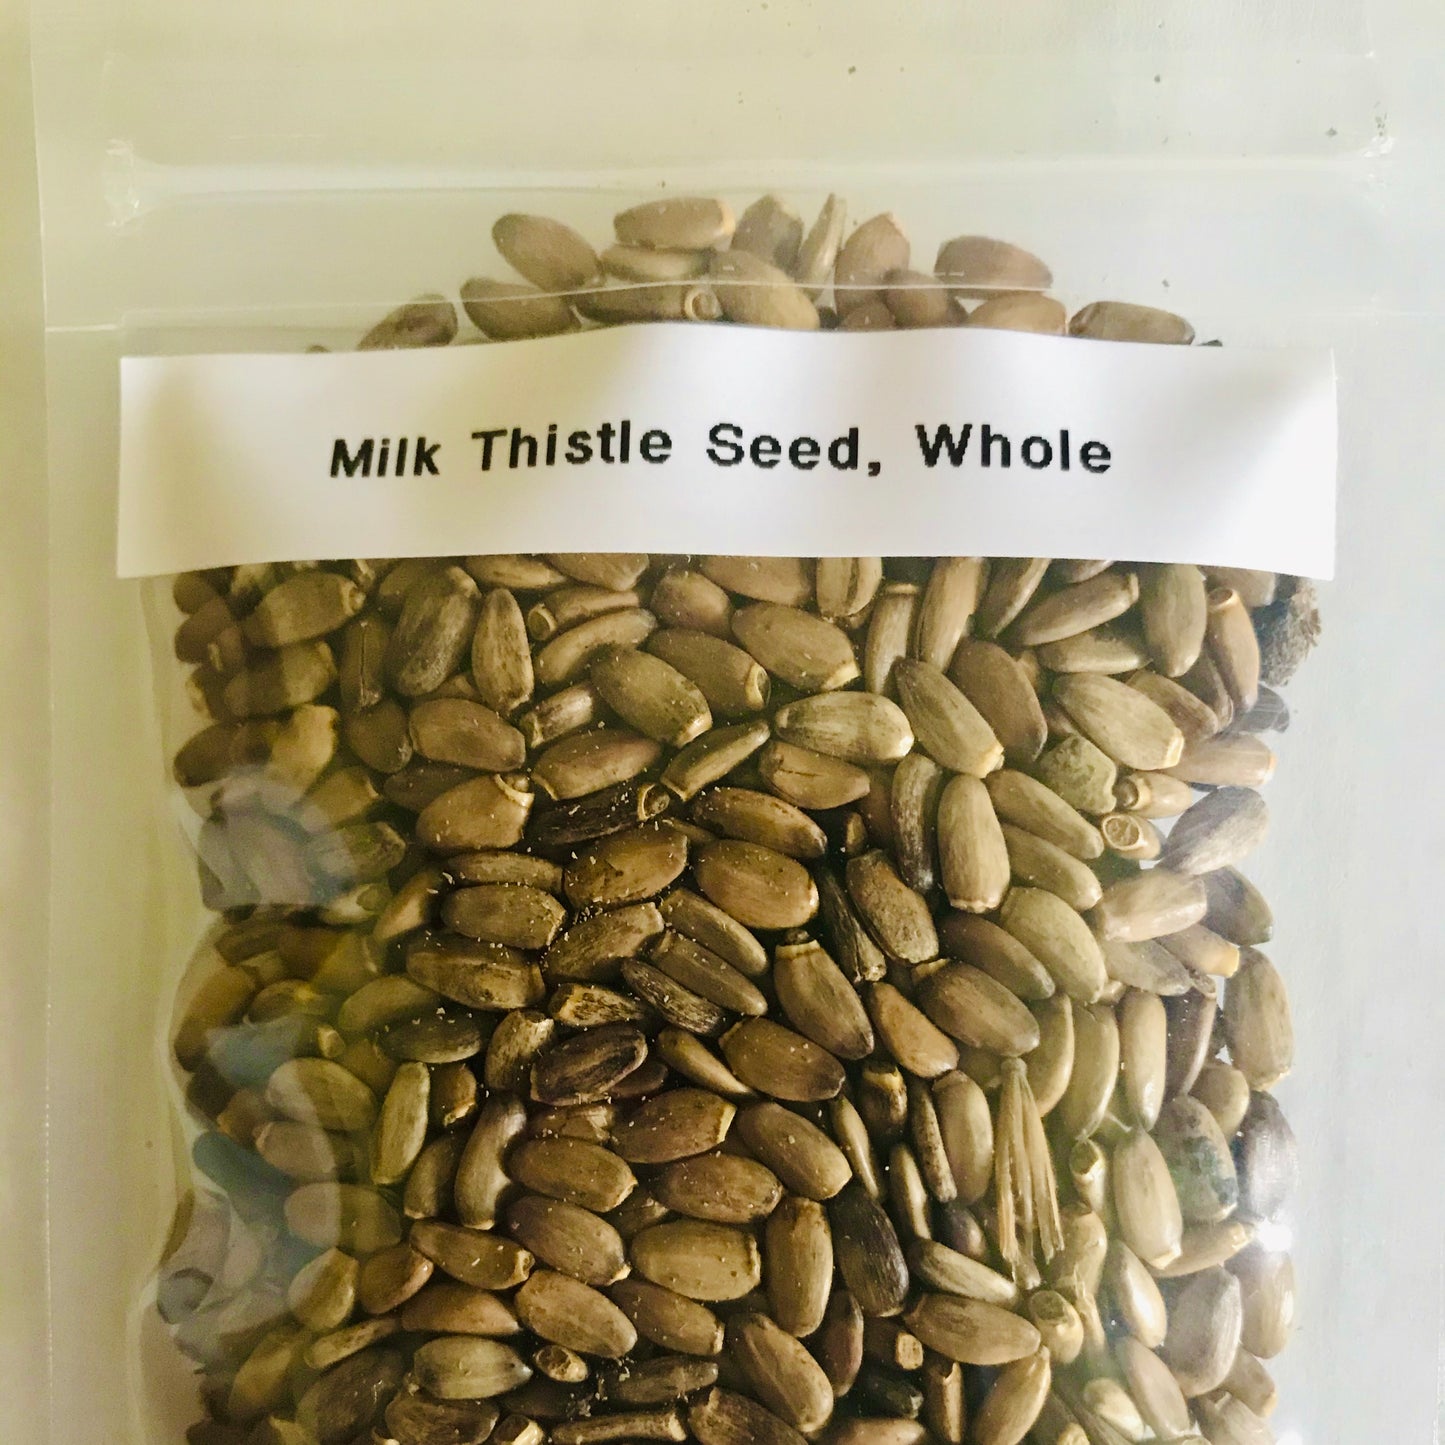 Milk Thistle Seed, Whole